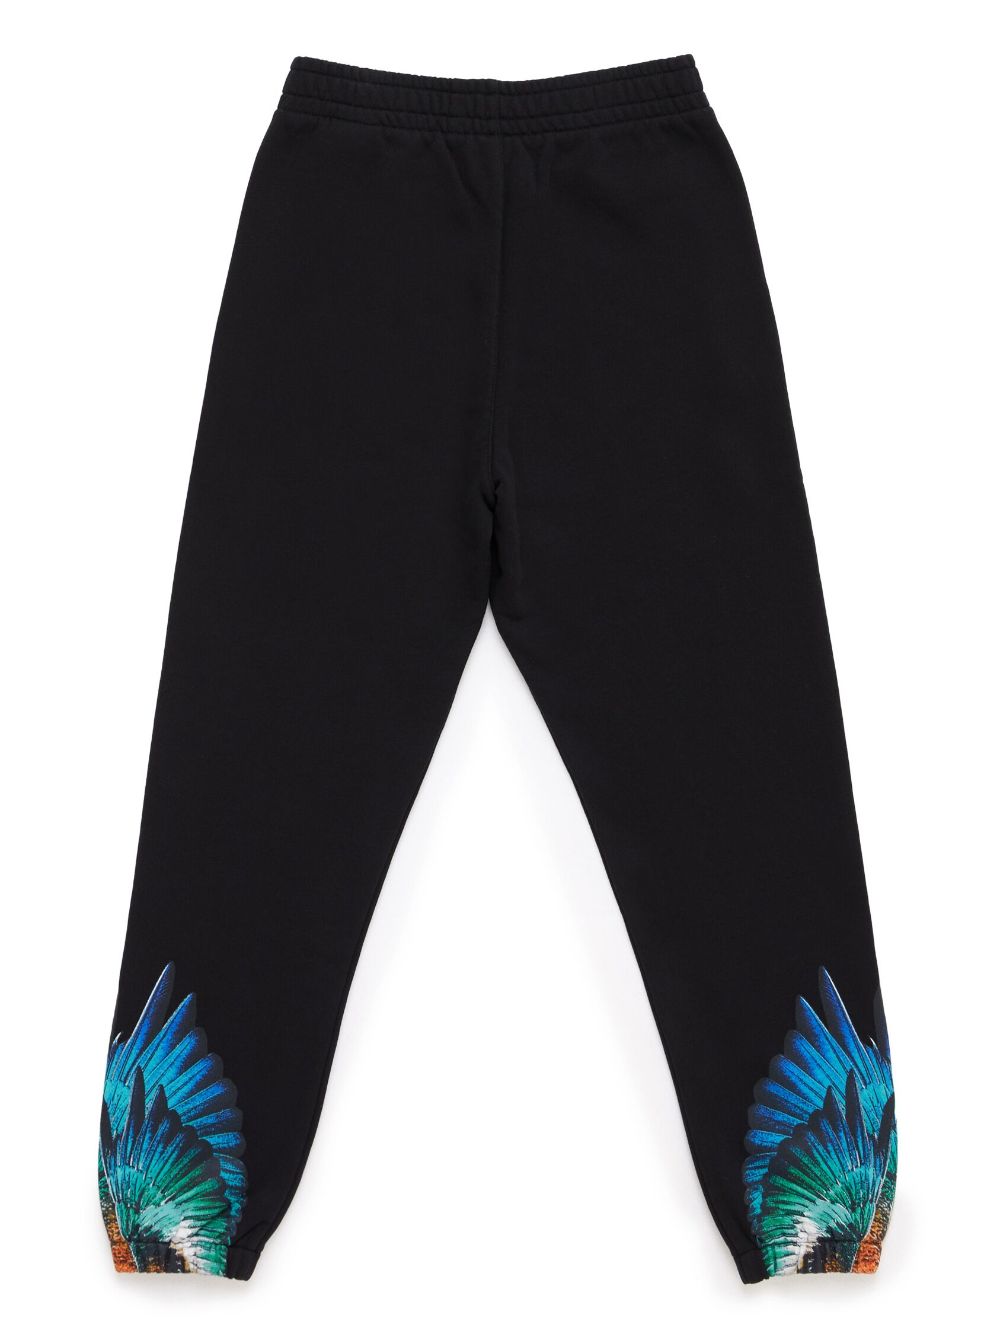 Pantalone sportivo nero con ali blu